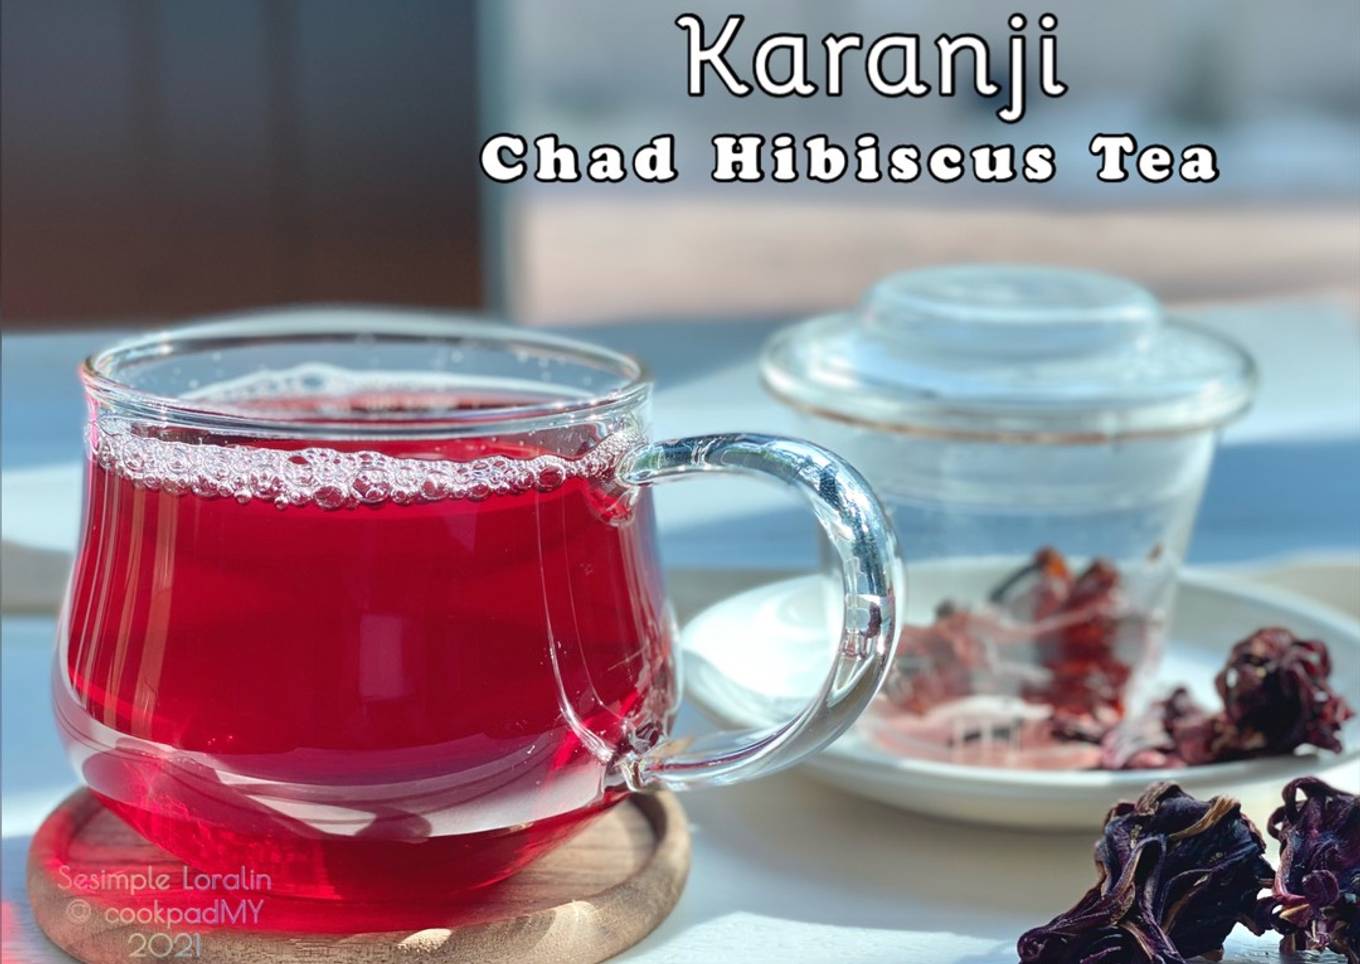 Resepi Chad Hibiscus Tea (Karanji) 🇹🇩 yang Enak dan Easy